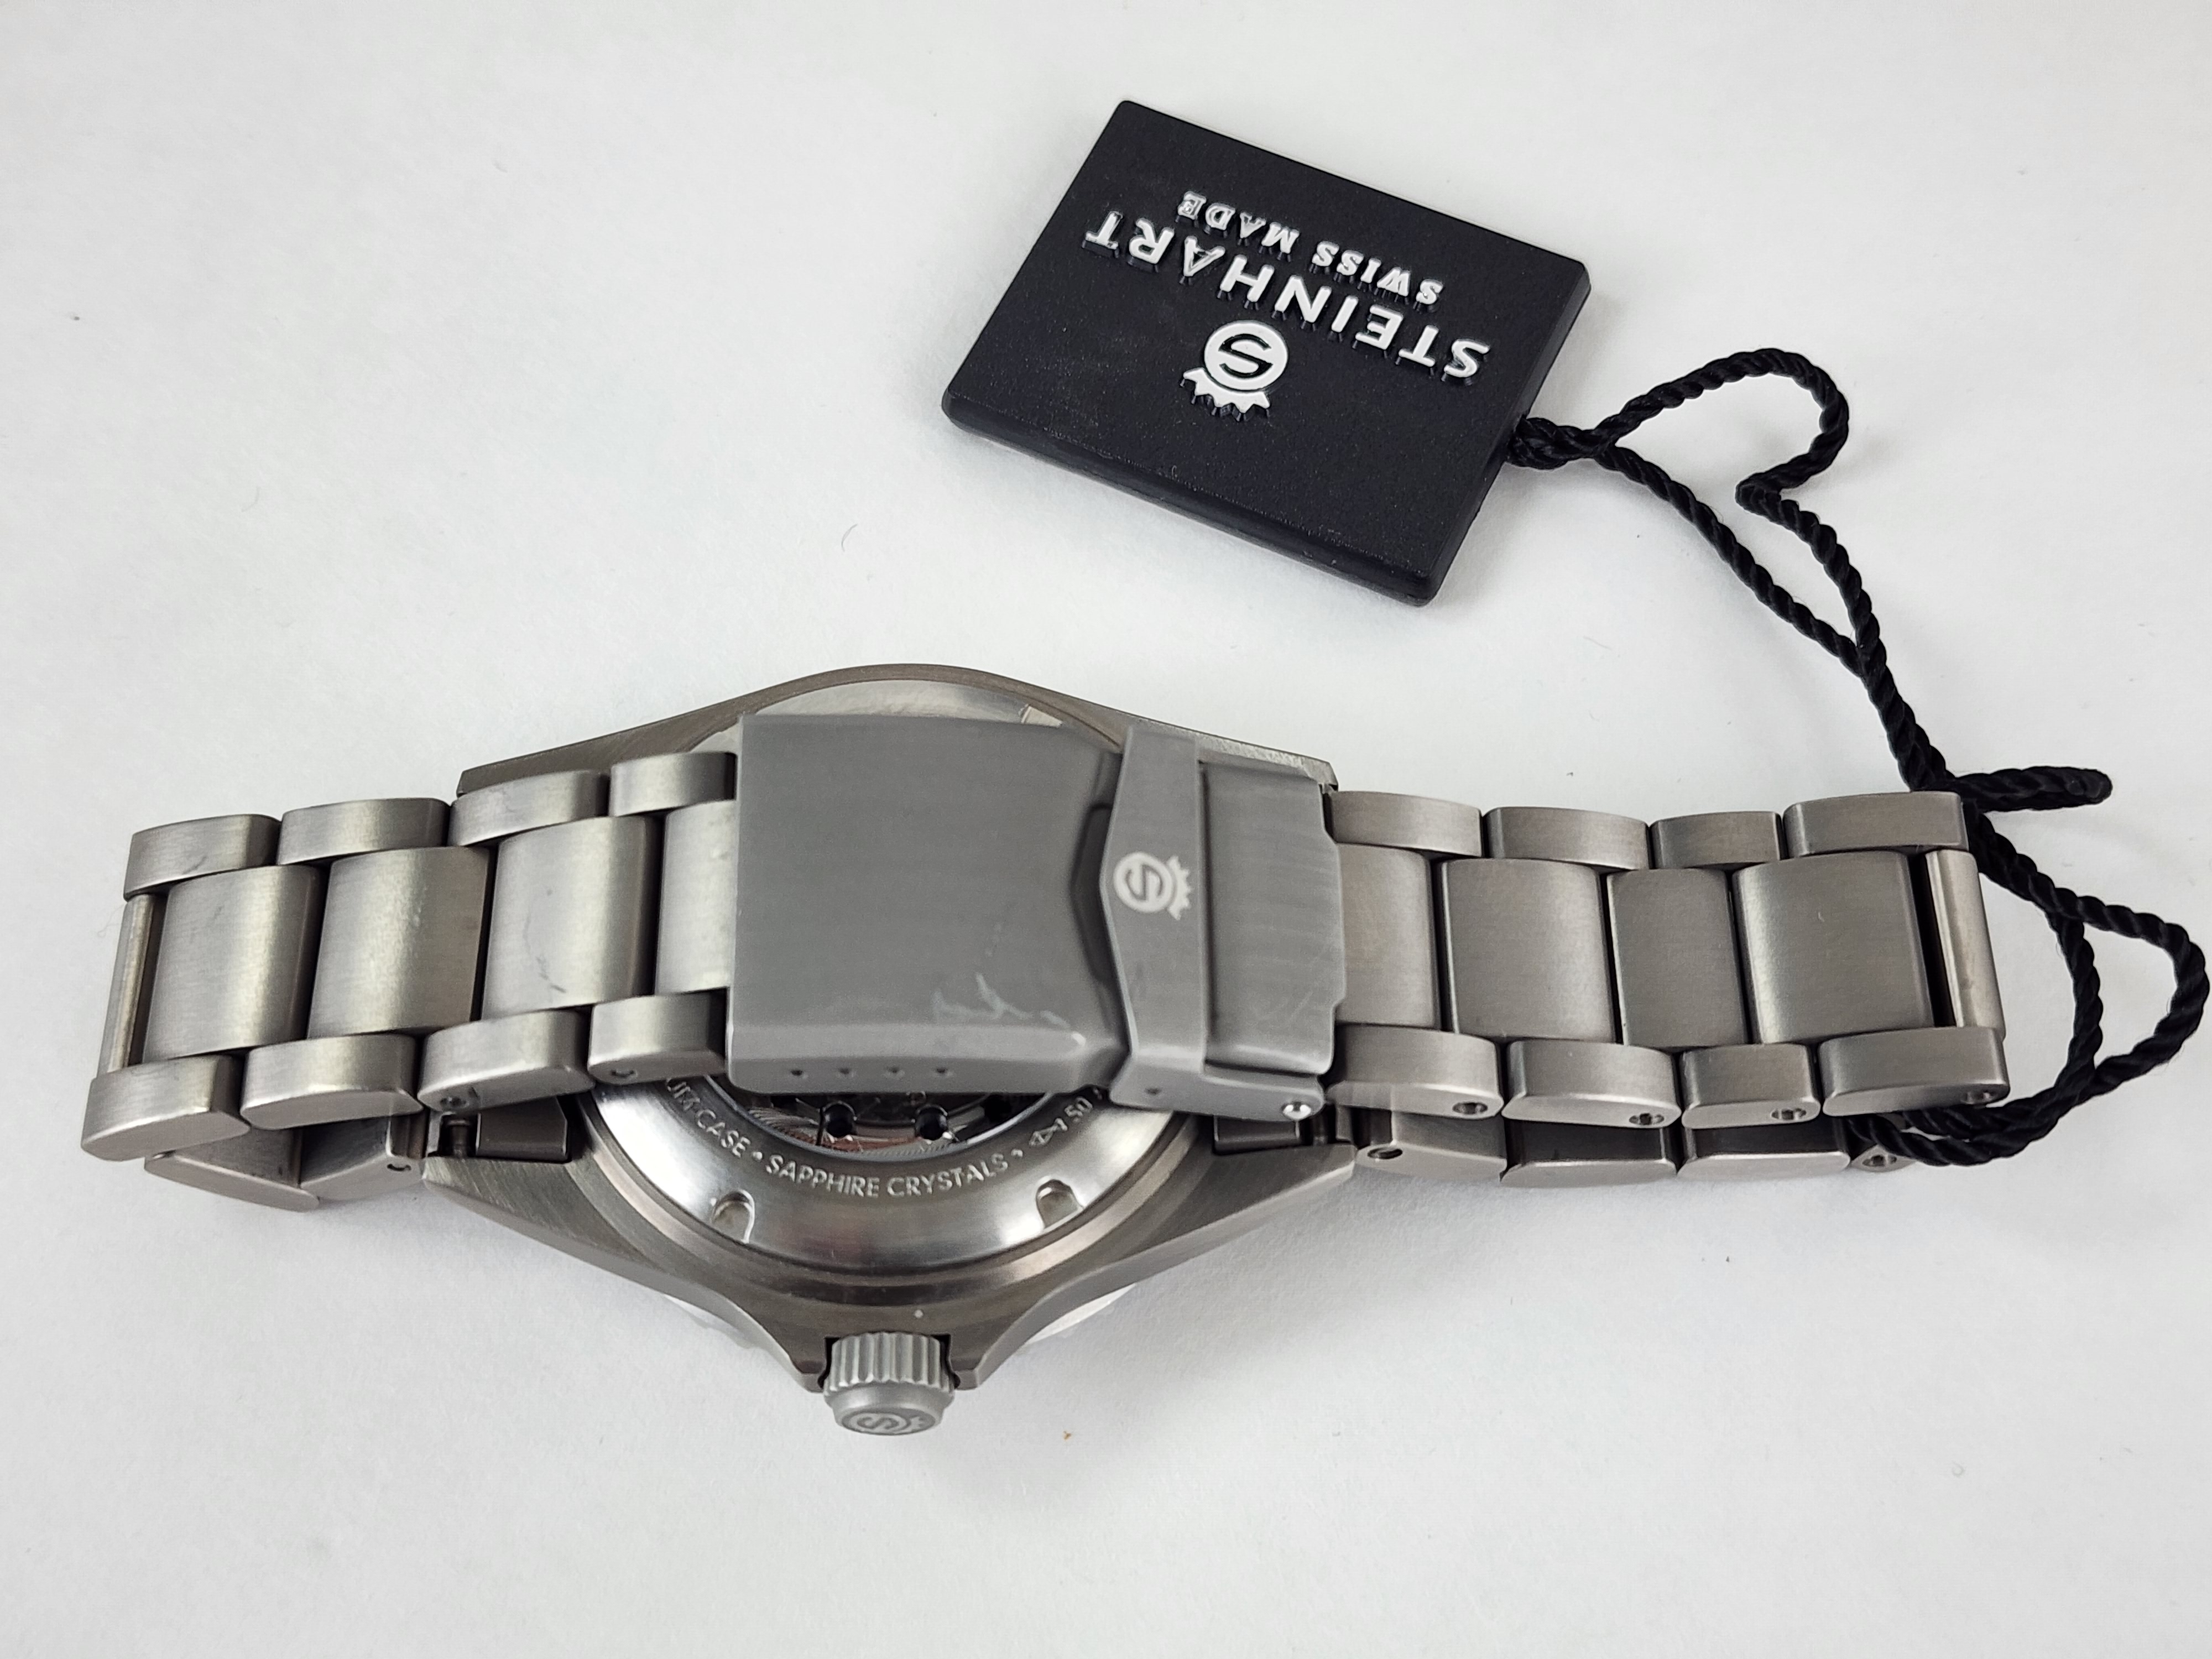 Steinhart Ocean One Titanium 500 GMT premium Ceramic Automatic Men's Watch 103-0662